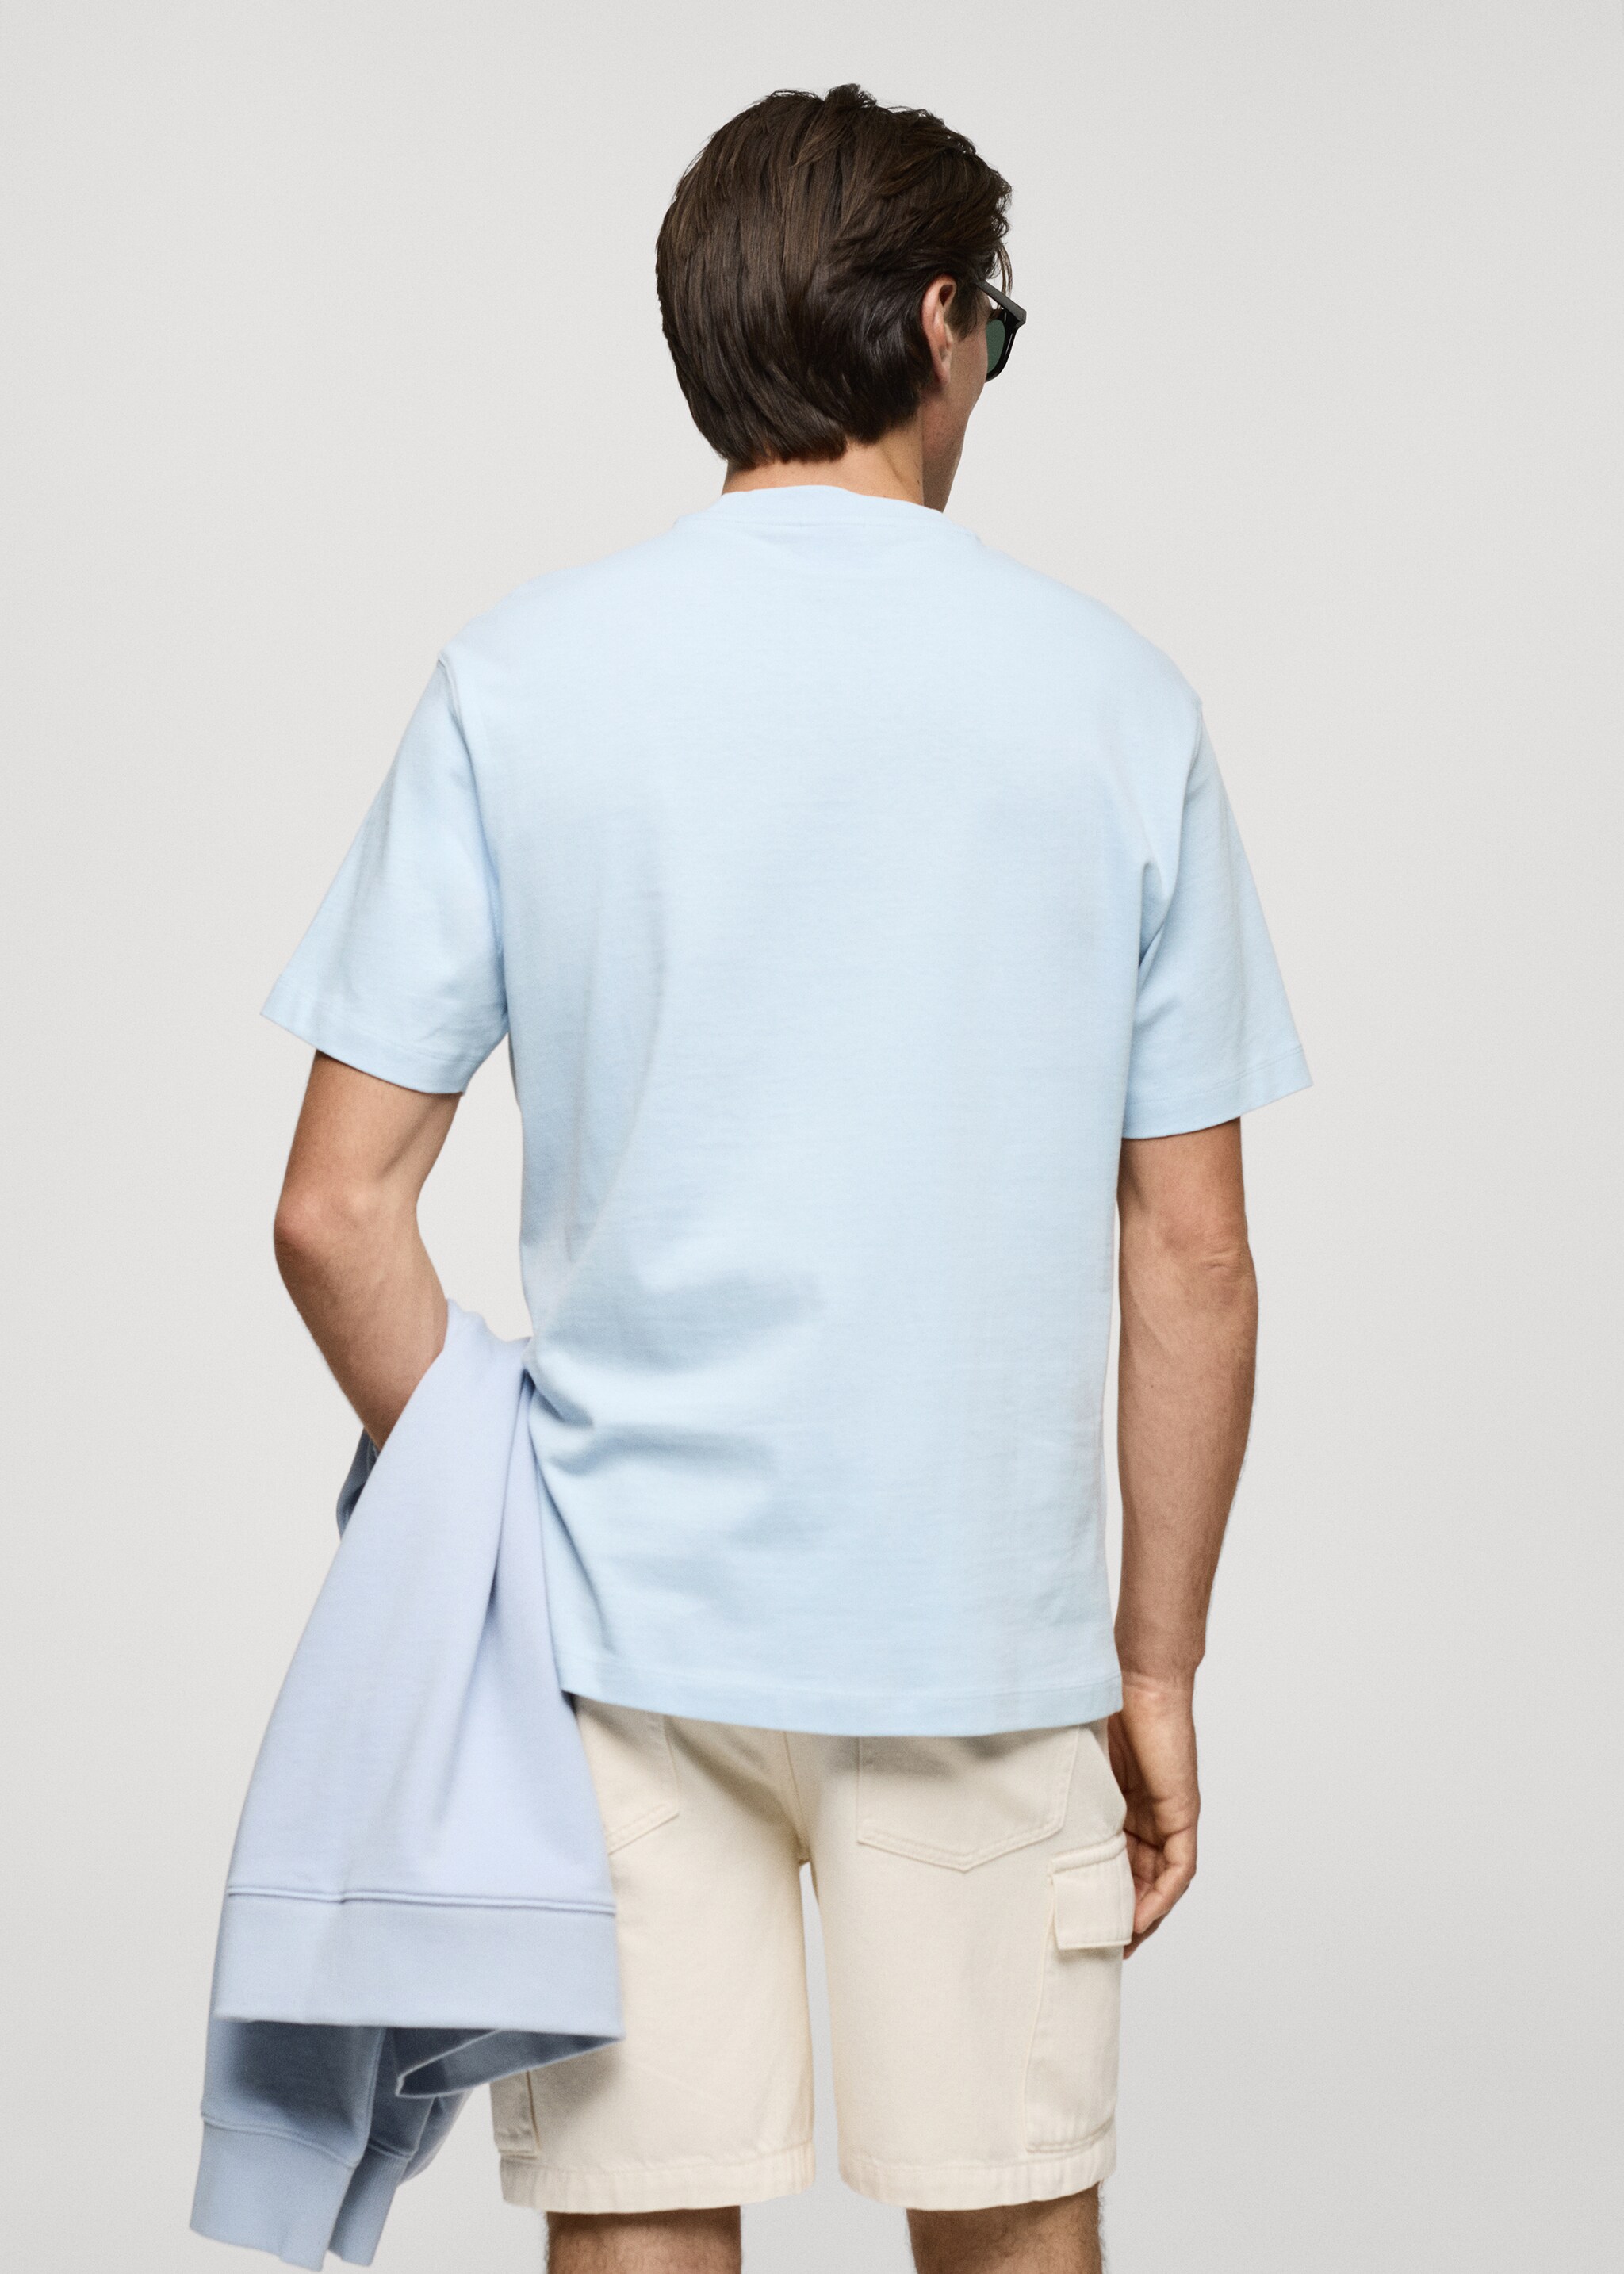 Camiseta básica 100% algodón relaxed fit - Reverso del artículo